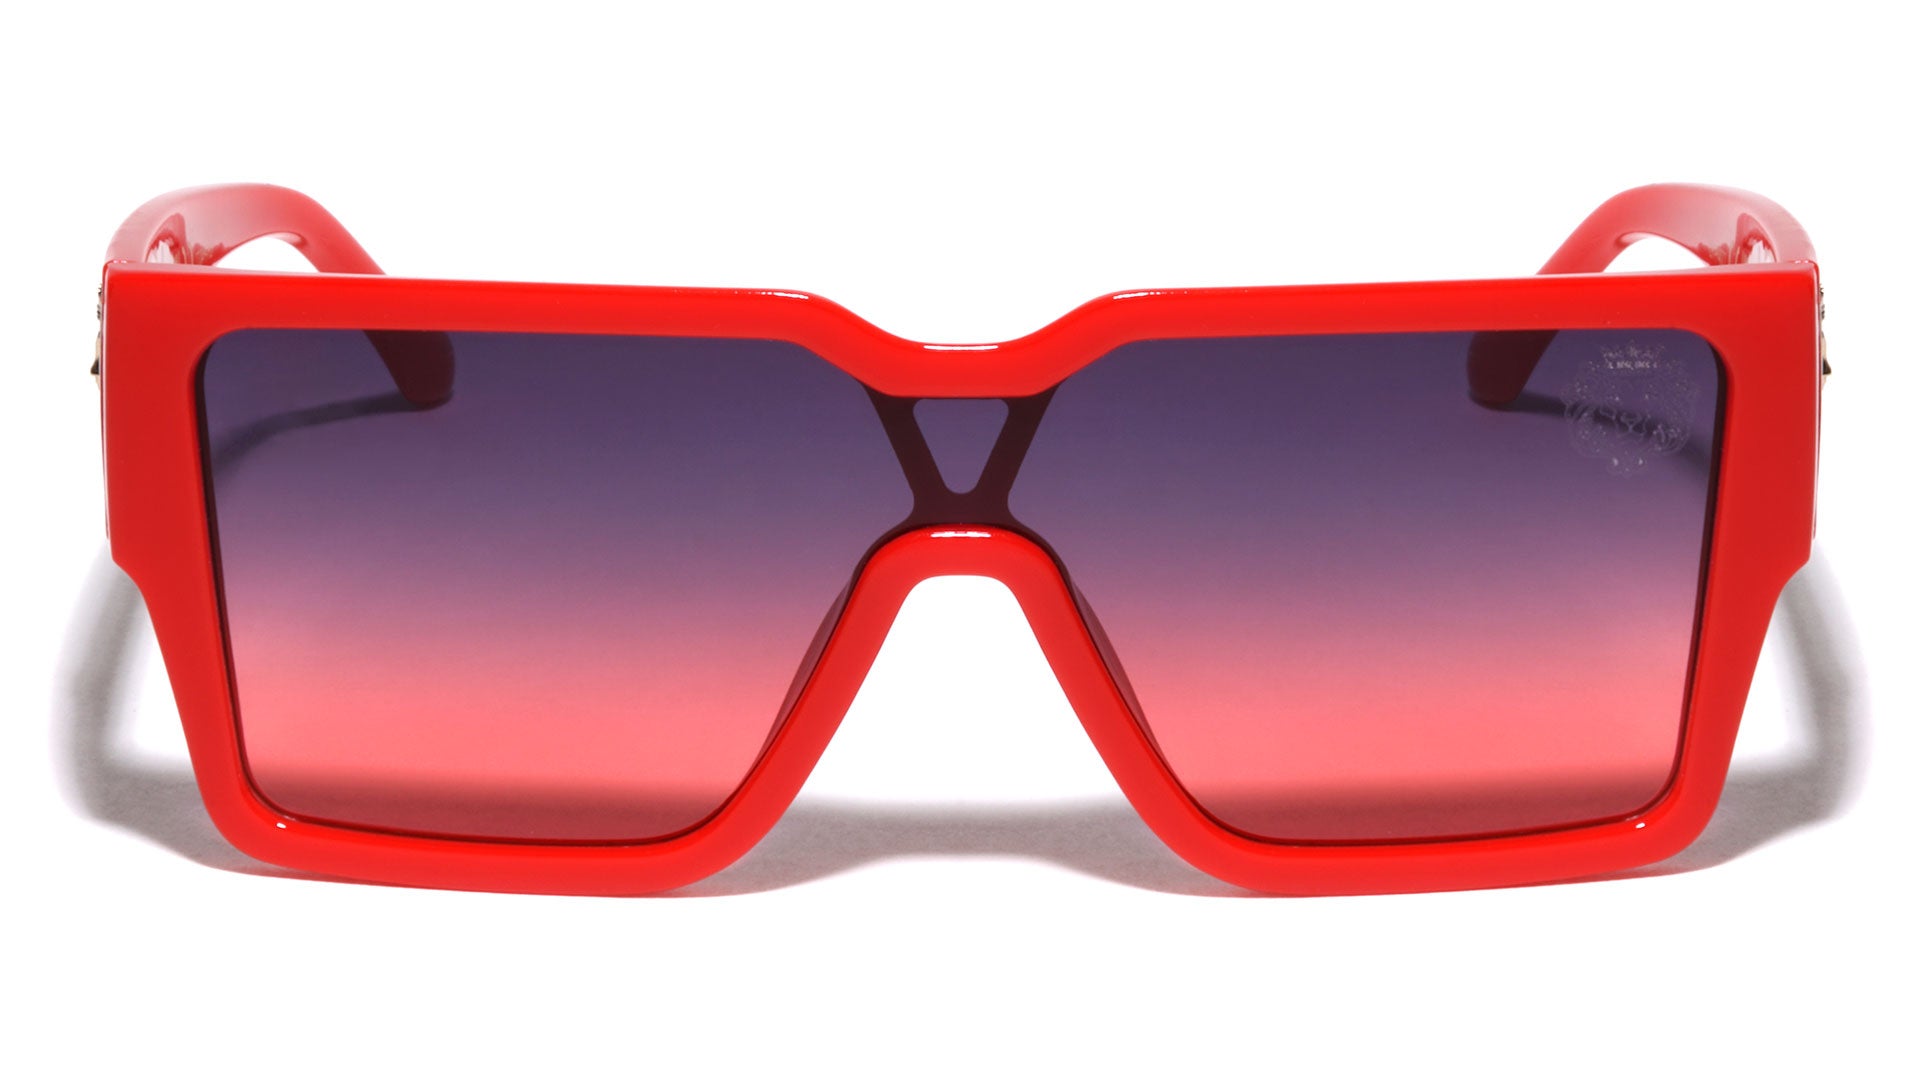 square & rectangle louis vuitton sunglasses